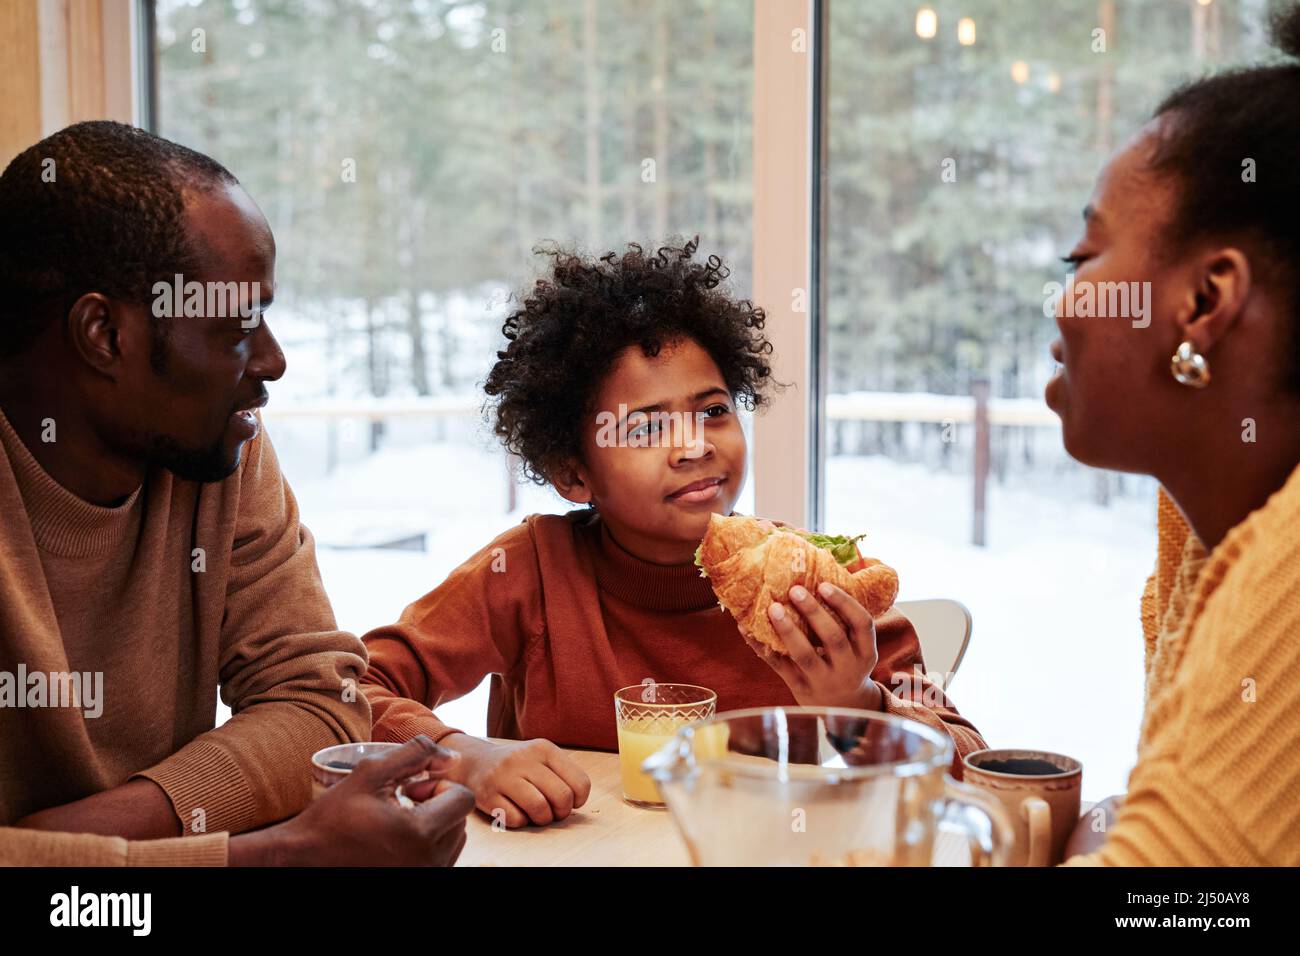 Süßer afroamerikanischer Junge mit hausgemachtem Hotfog, der beim Frühstück seiner Mutter zuhört, während eine dreiköpfige Familie am Tisch vor einem großen Fenster sitzt Stockfoto